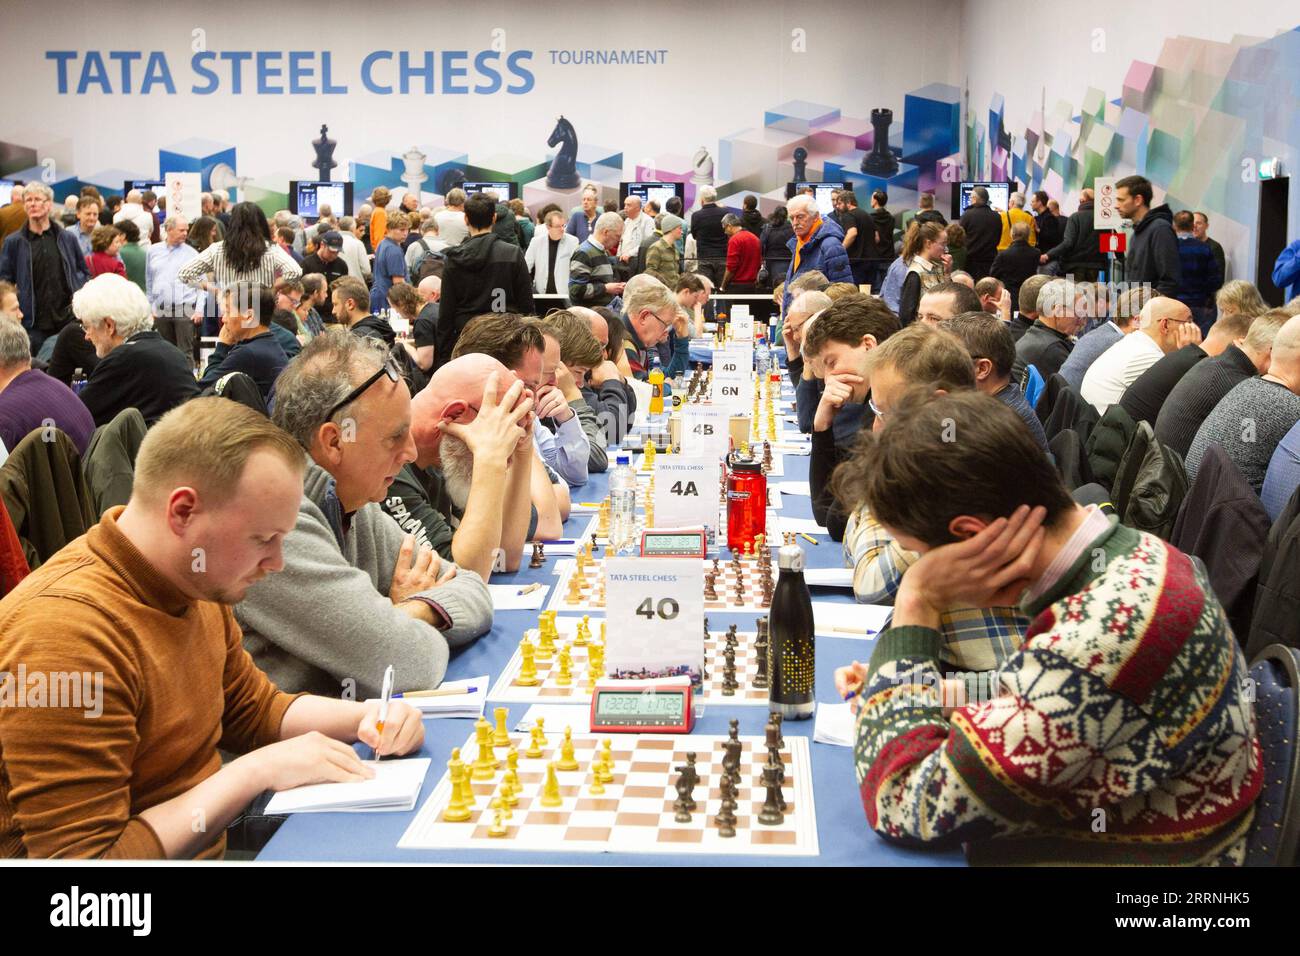 Tata Steel Chess 2022 starts on January 14